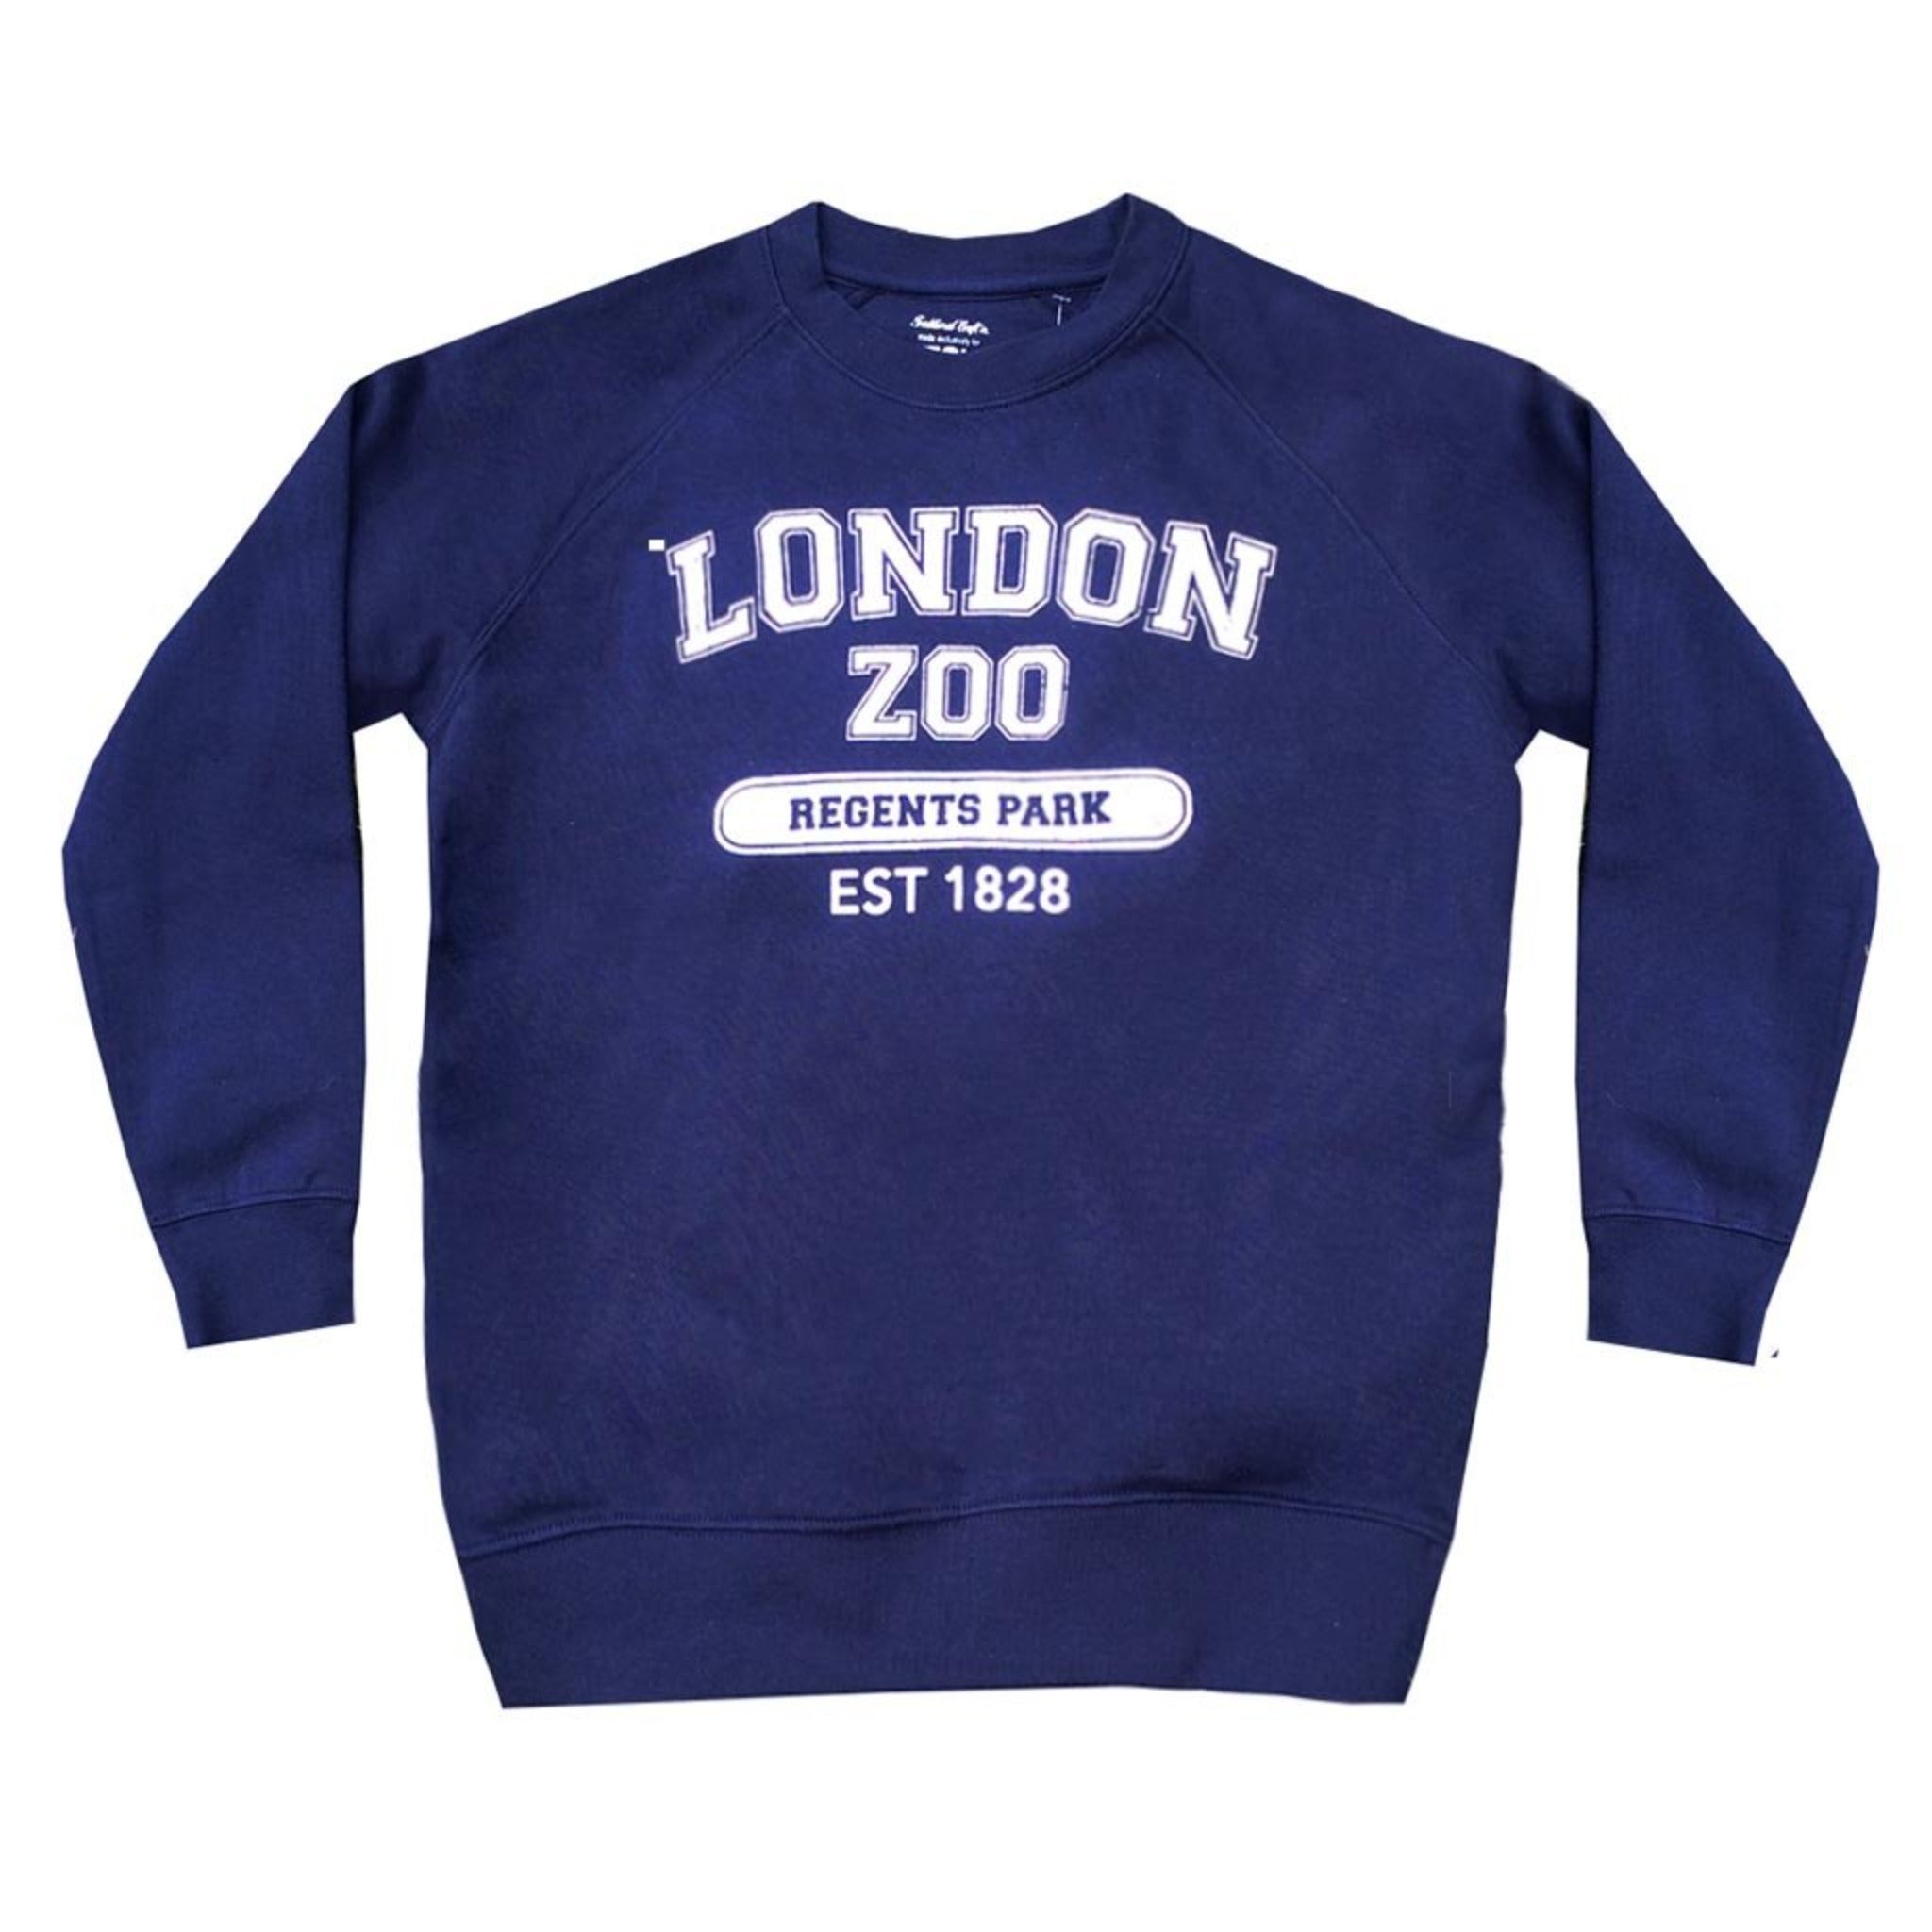 Adult's London Zoo Sweatshirt, XS